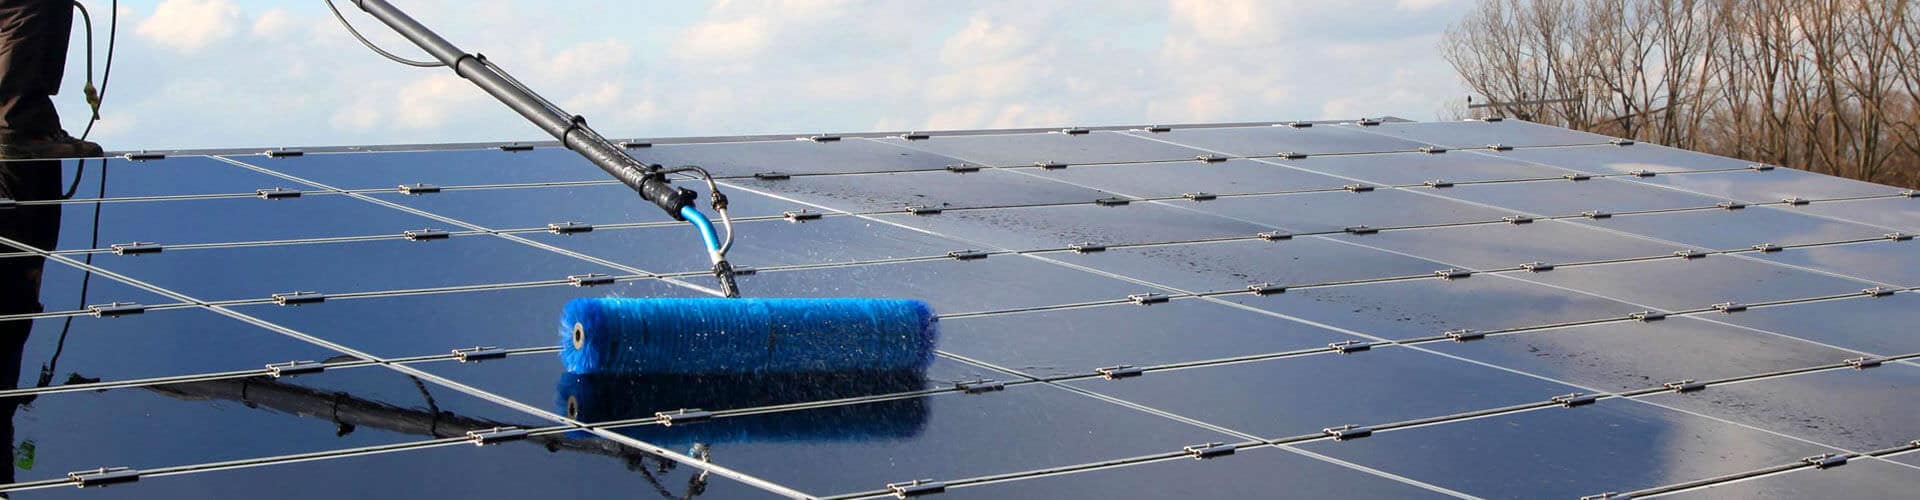 Solaranlagen reinigen für mehr Leistung